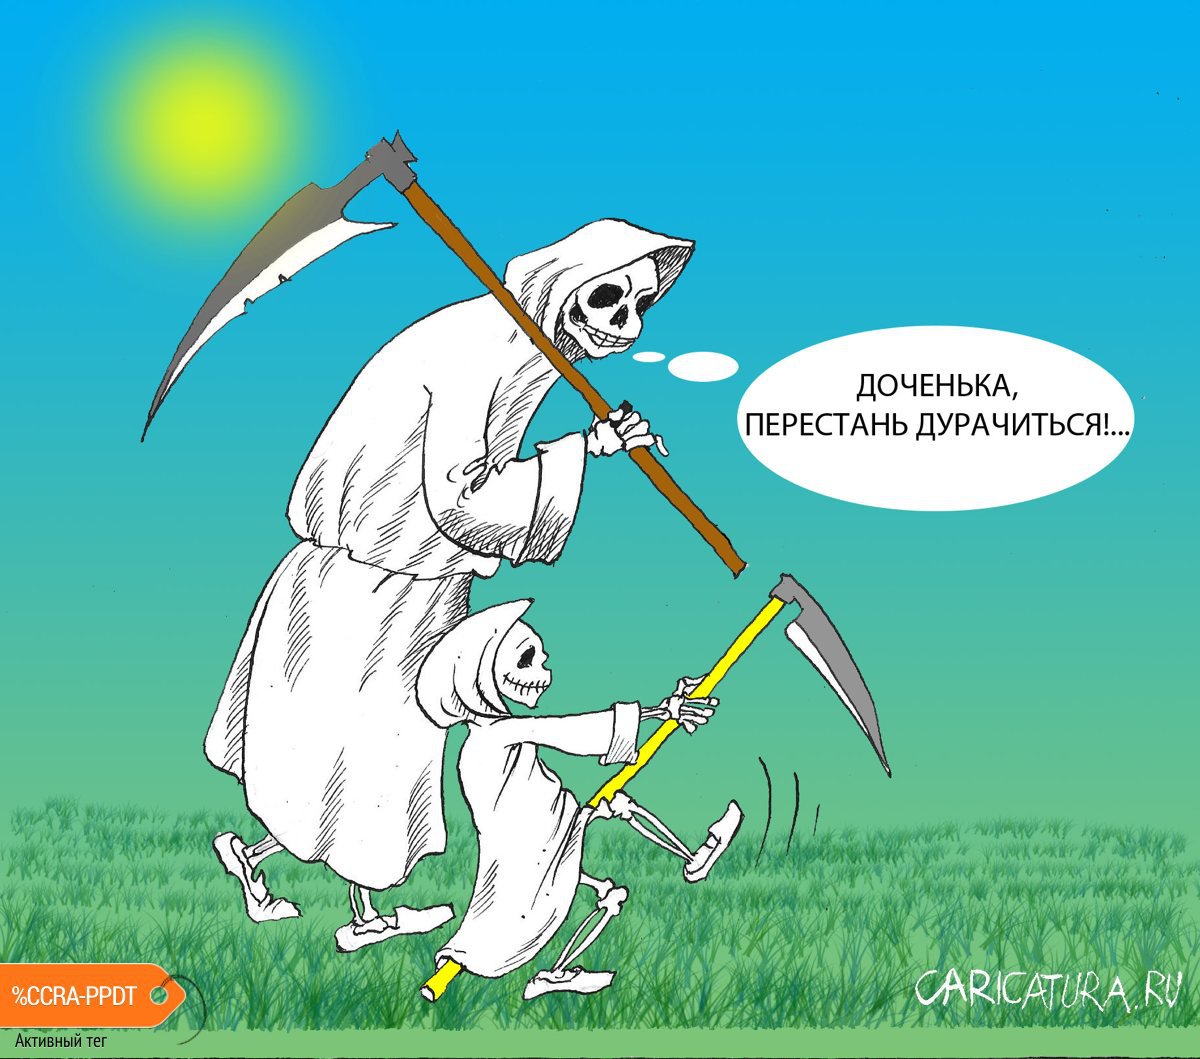 Карикатура "Маленькая смерть", Александр Шульпинов